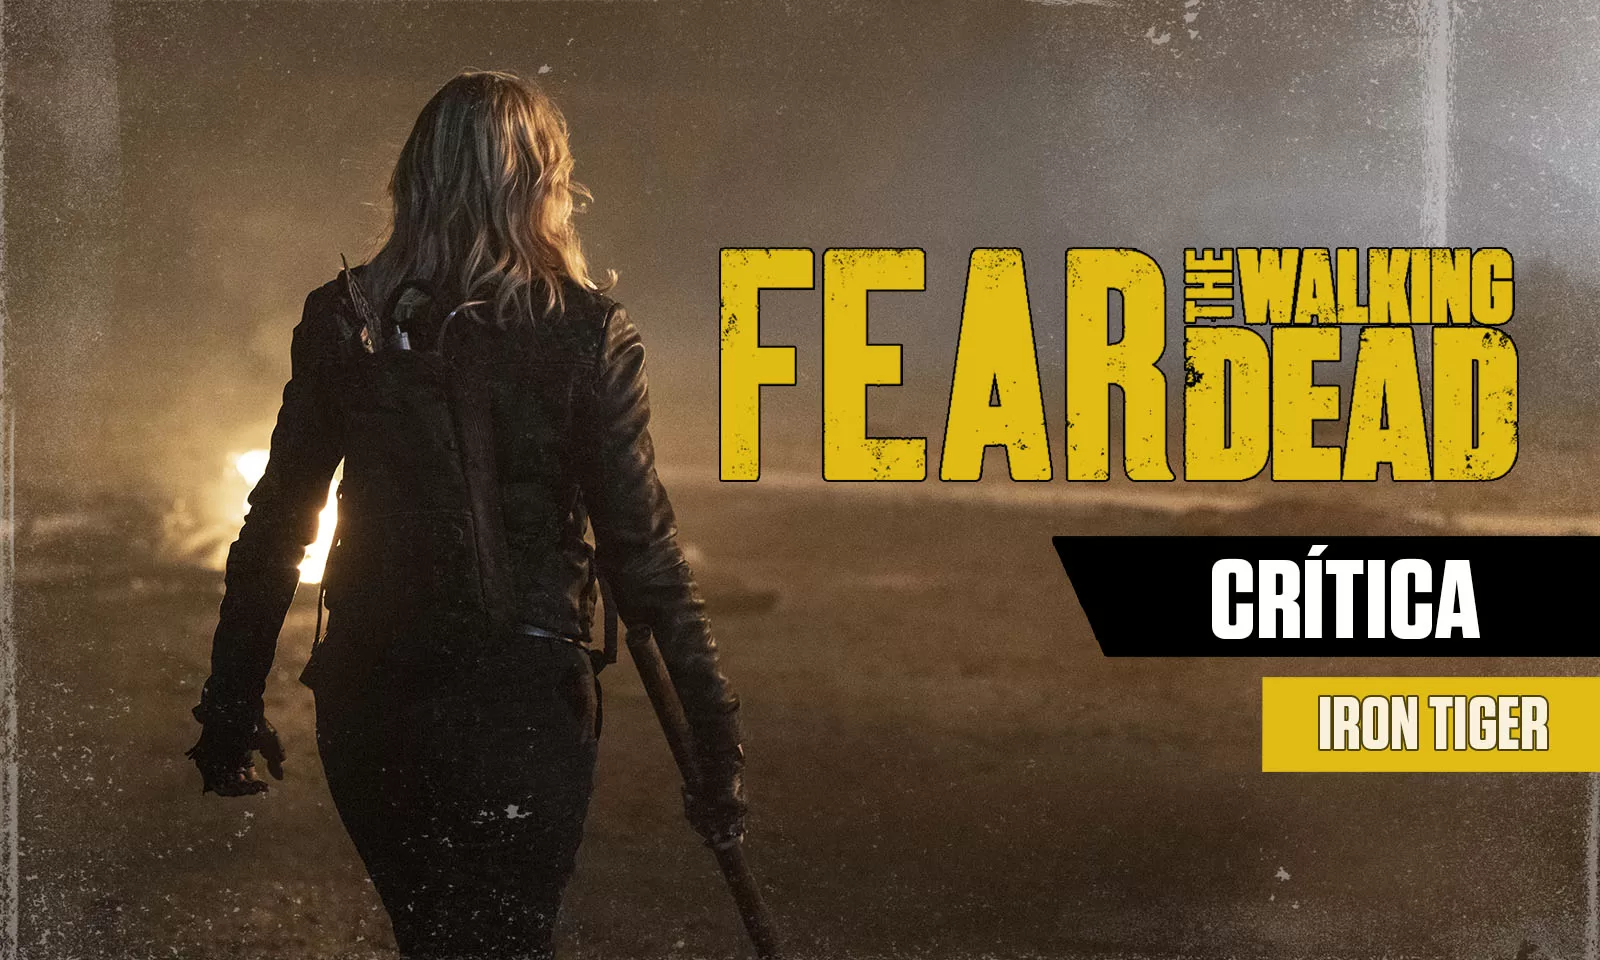 CRÍTICA | Fear the Walking Dead S08E08 – “Iron Tiger”: Surpreendentemente bom